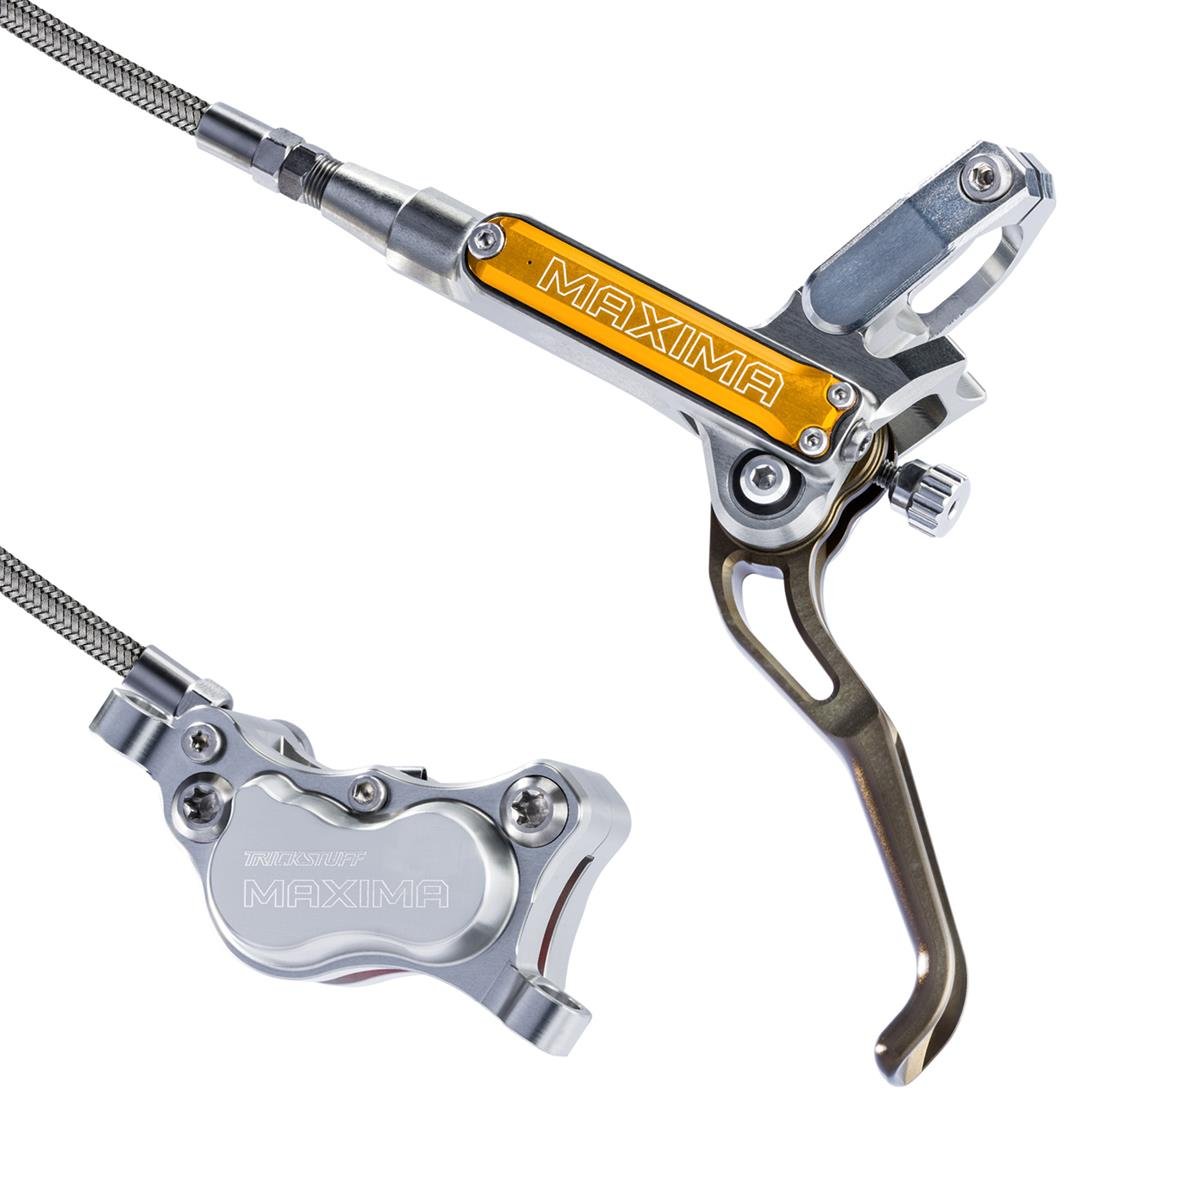 Trickstuff MTB-Bremsen-Set Maxima Silber/Orange, 4-Kolben, Stahlflexleitung zur internen Verlegung